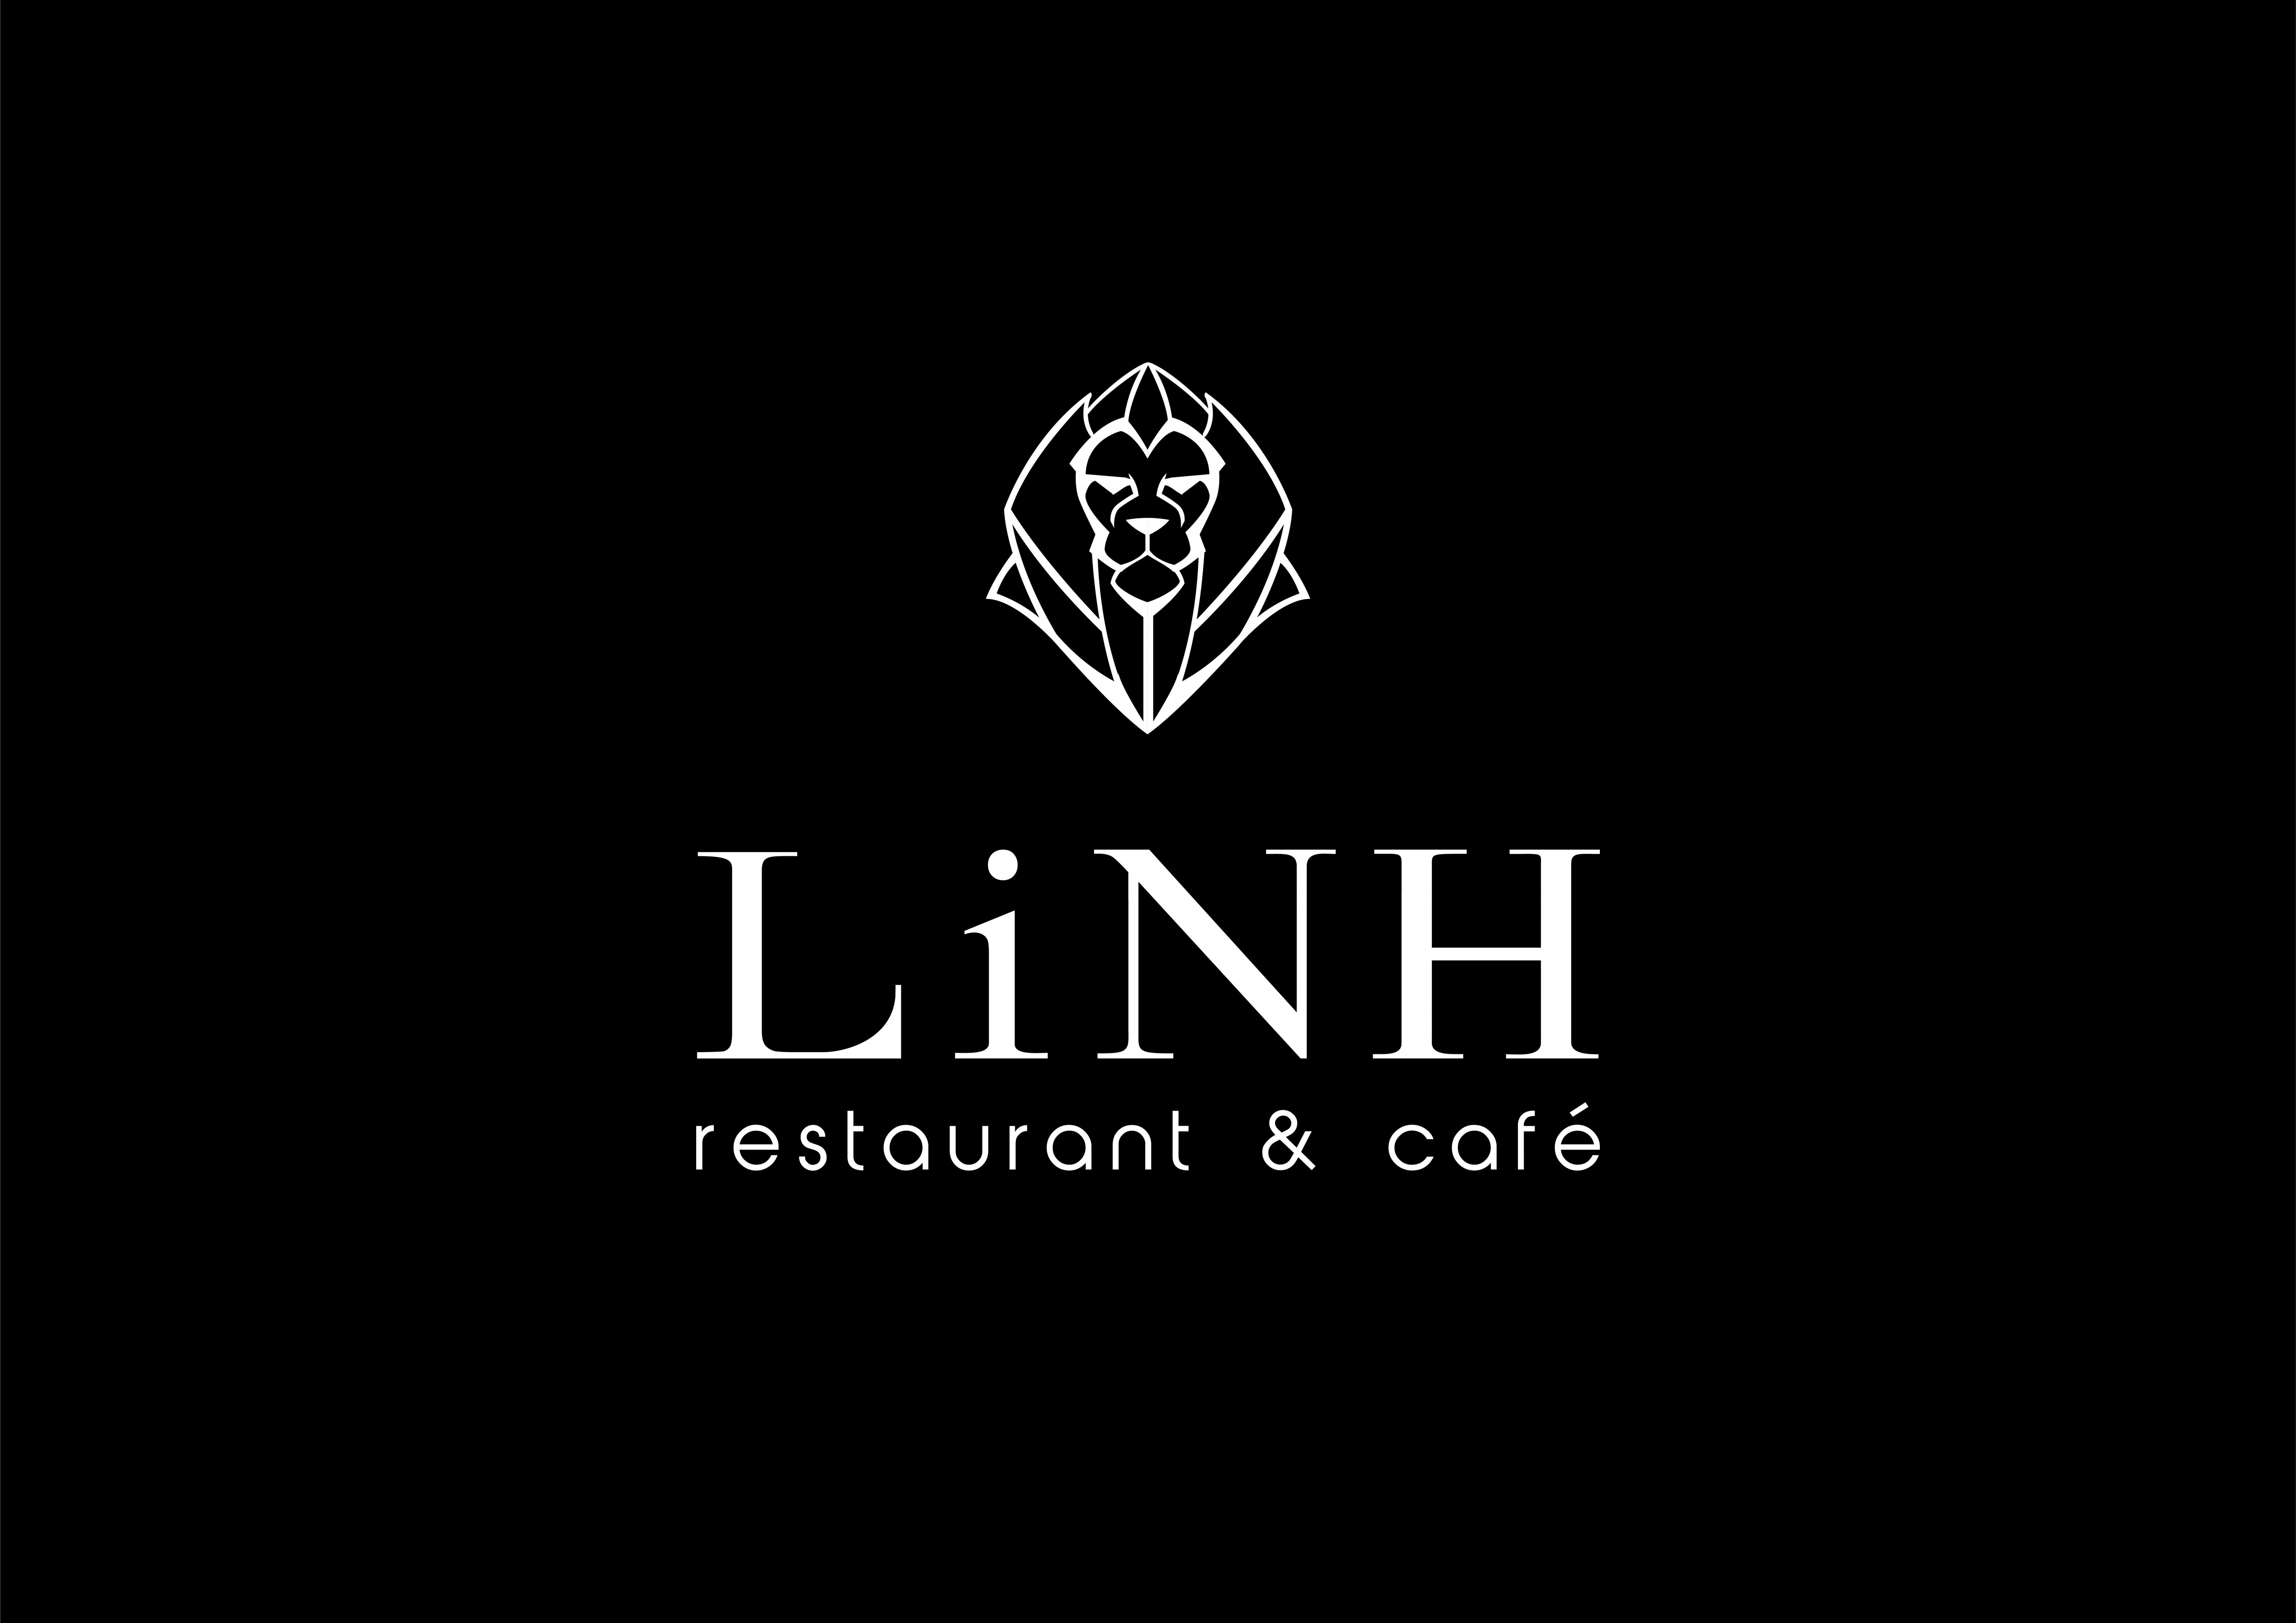 Linh Restaurant & Café